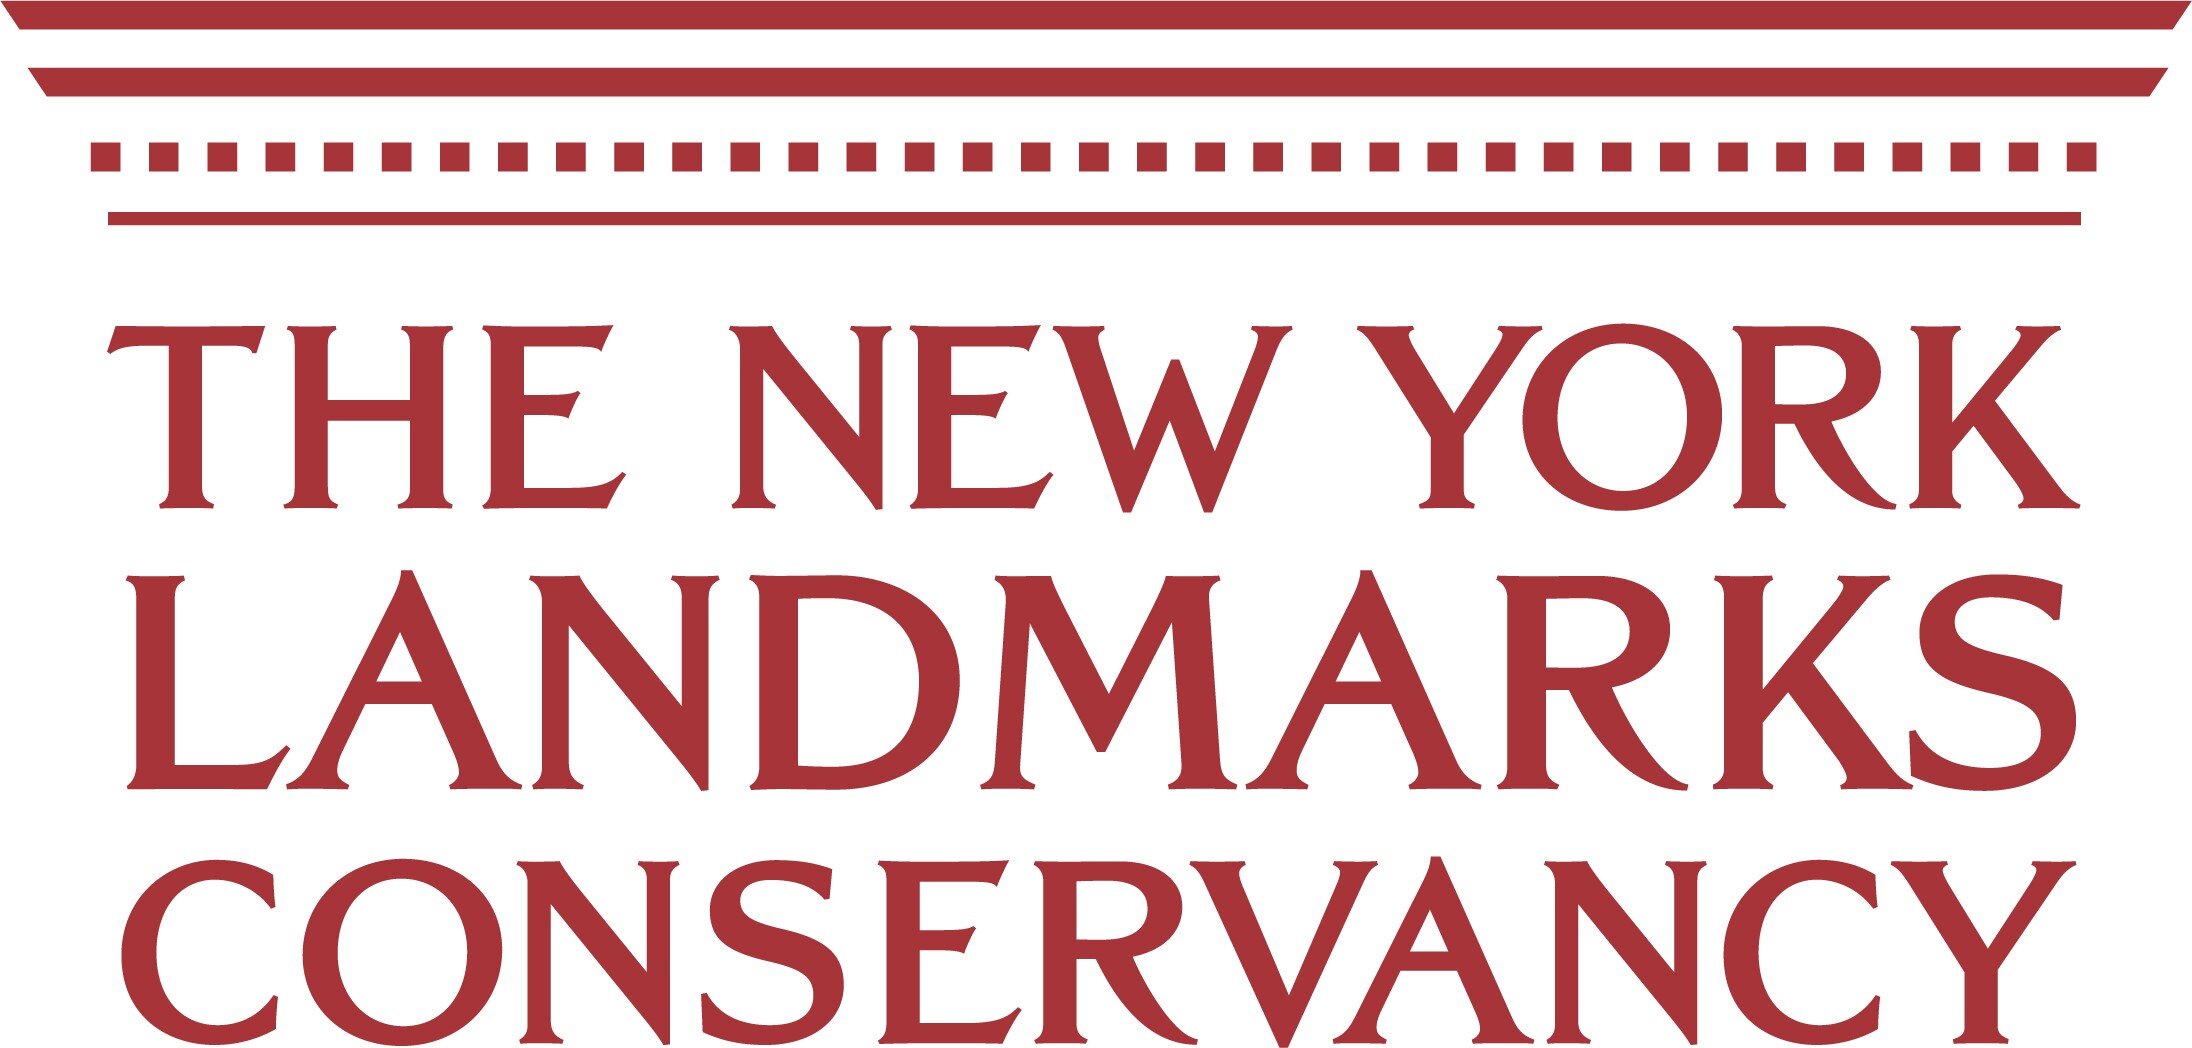 The New York Landmarks Conservancy logo